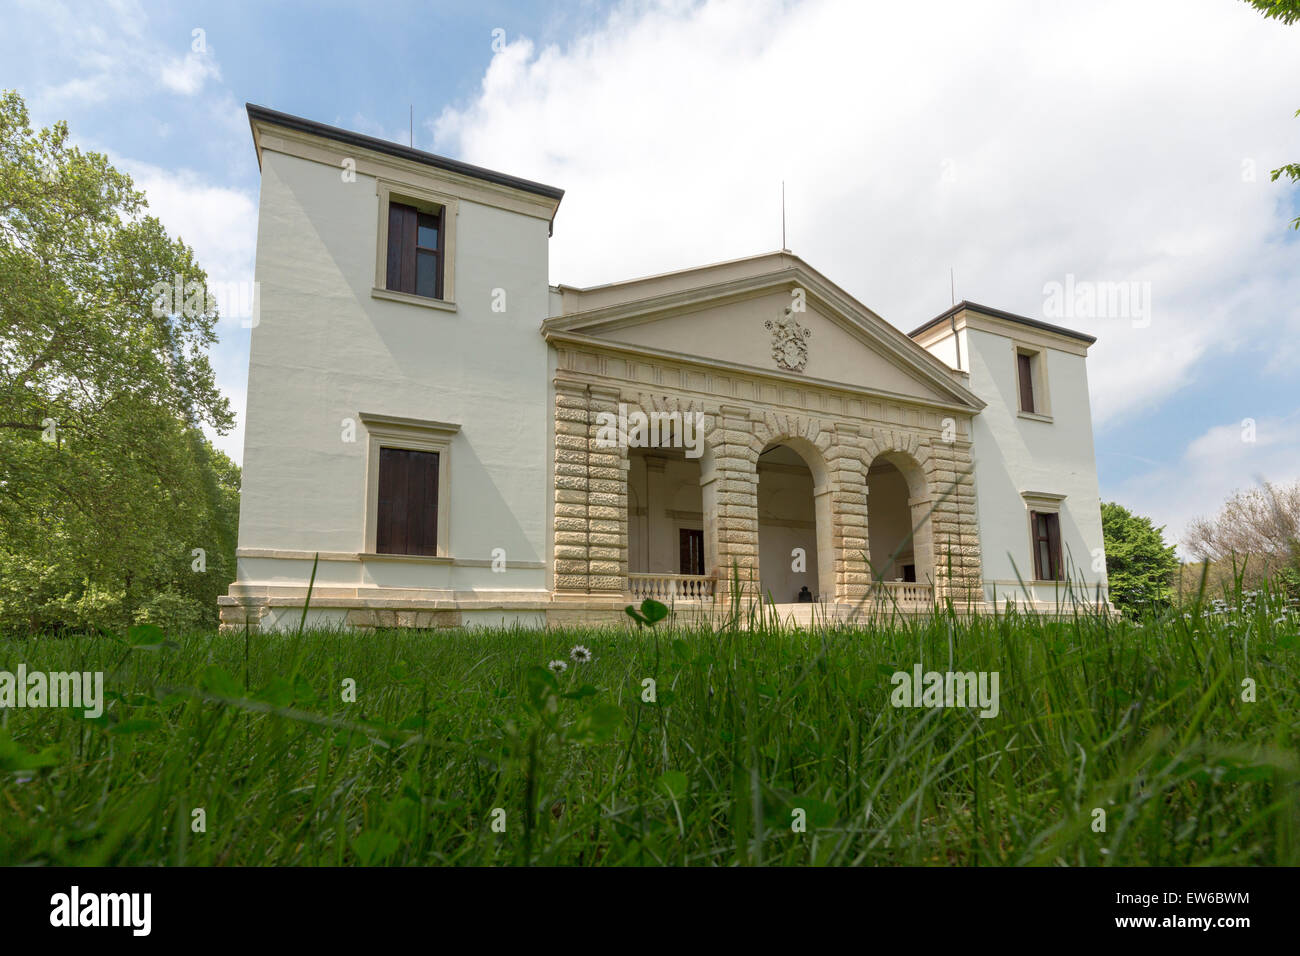 La Villa Pisani Bonetti est une villa patricienne conçue par Andrea Palladio, situé à Bagnolo, un hameau de la commune de Lonigo dans la région Vénétie en Italie. Banque D'Images